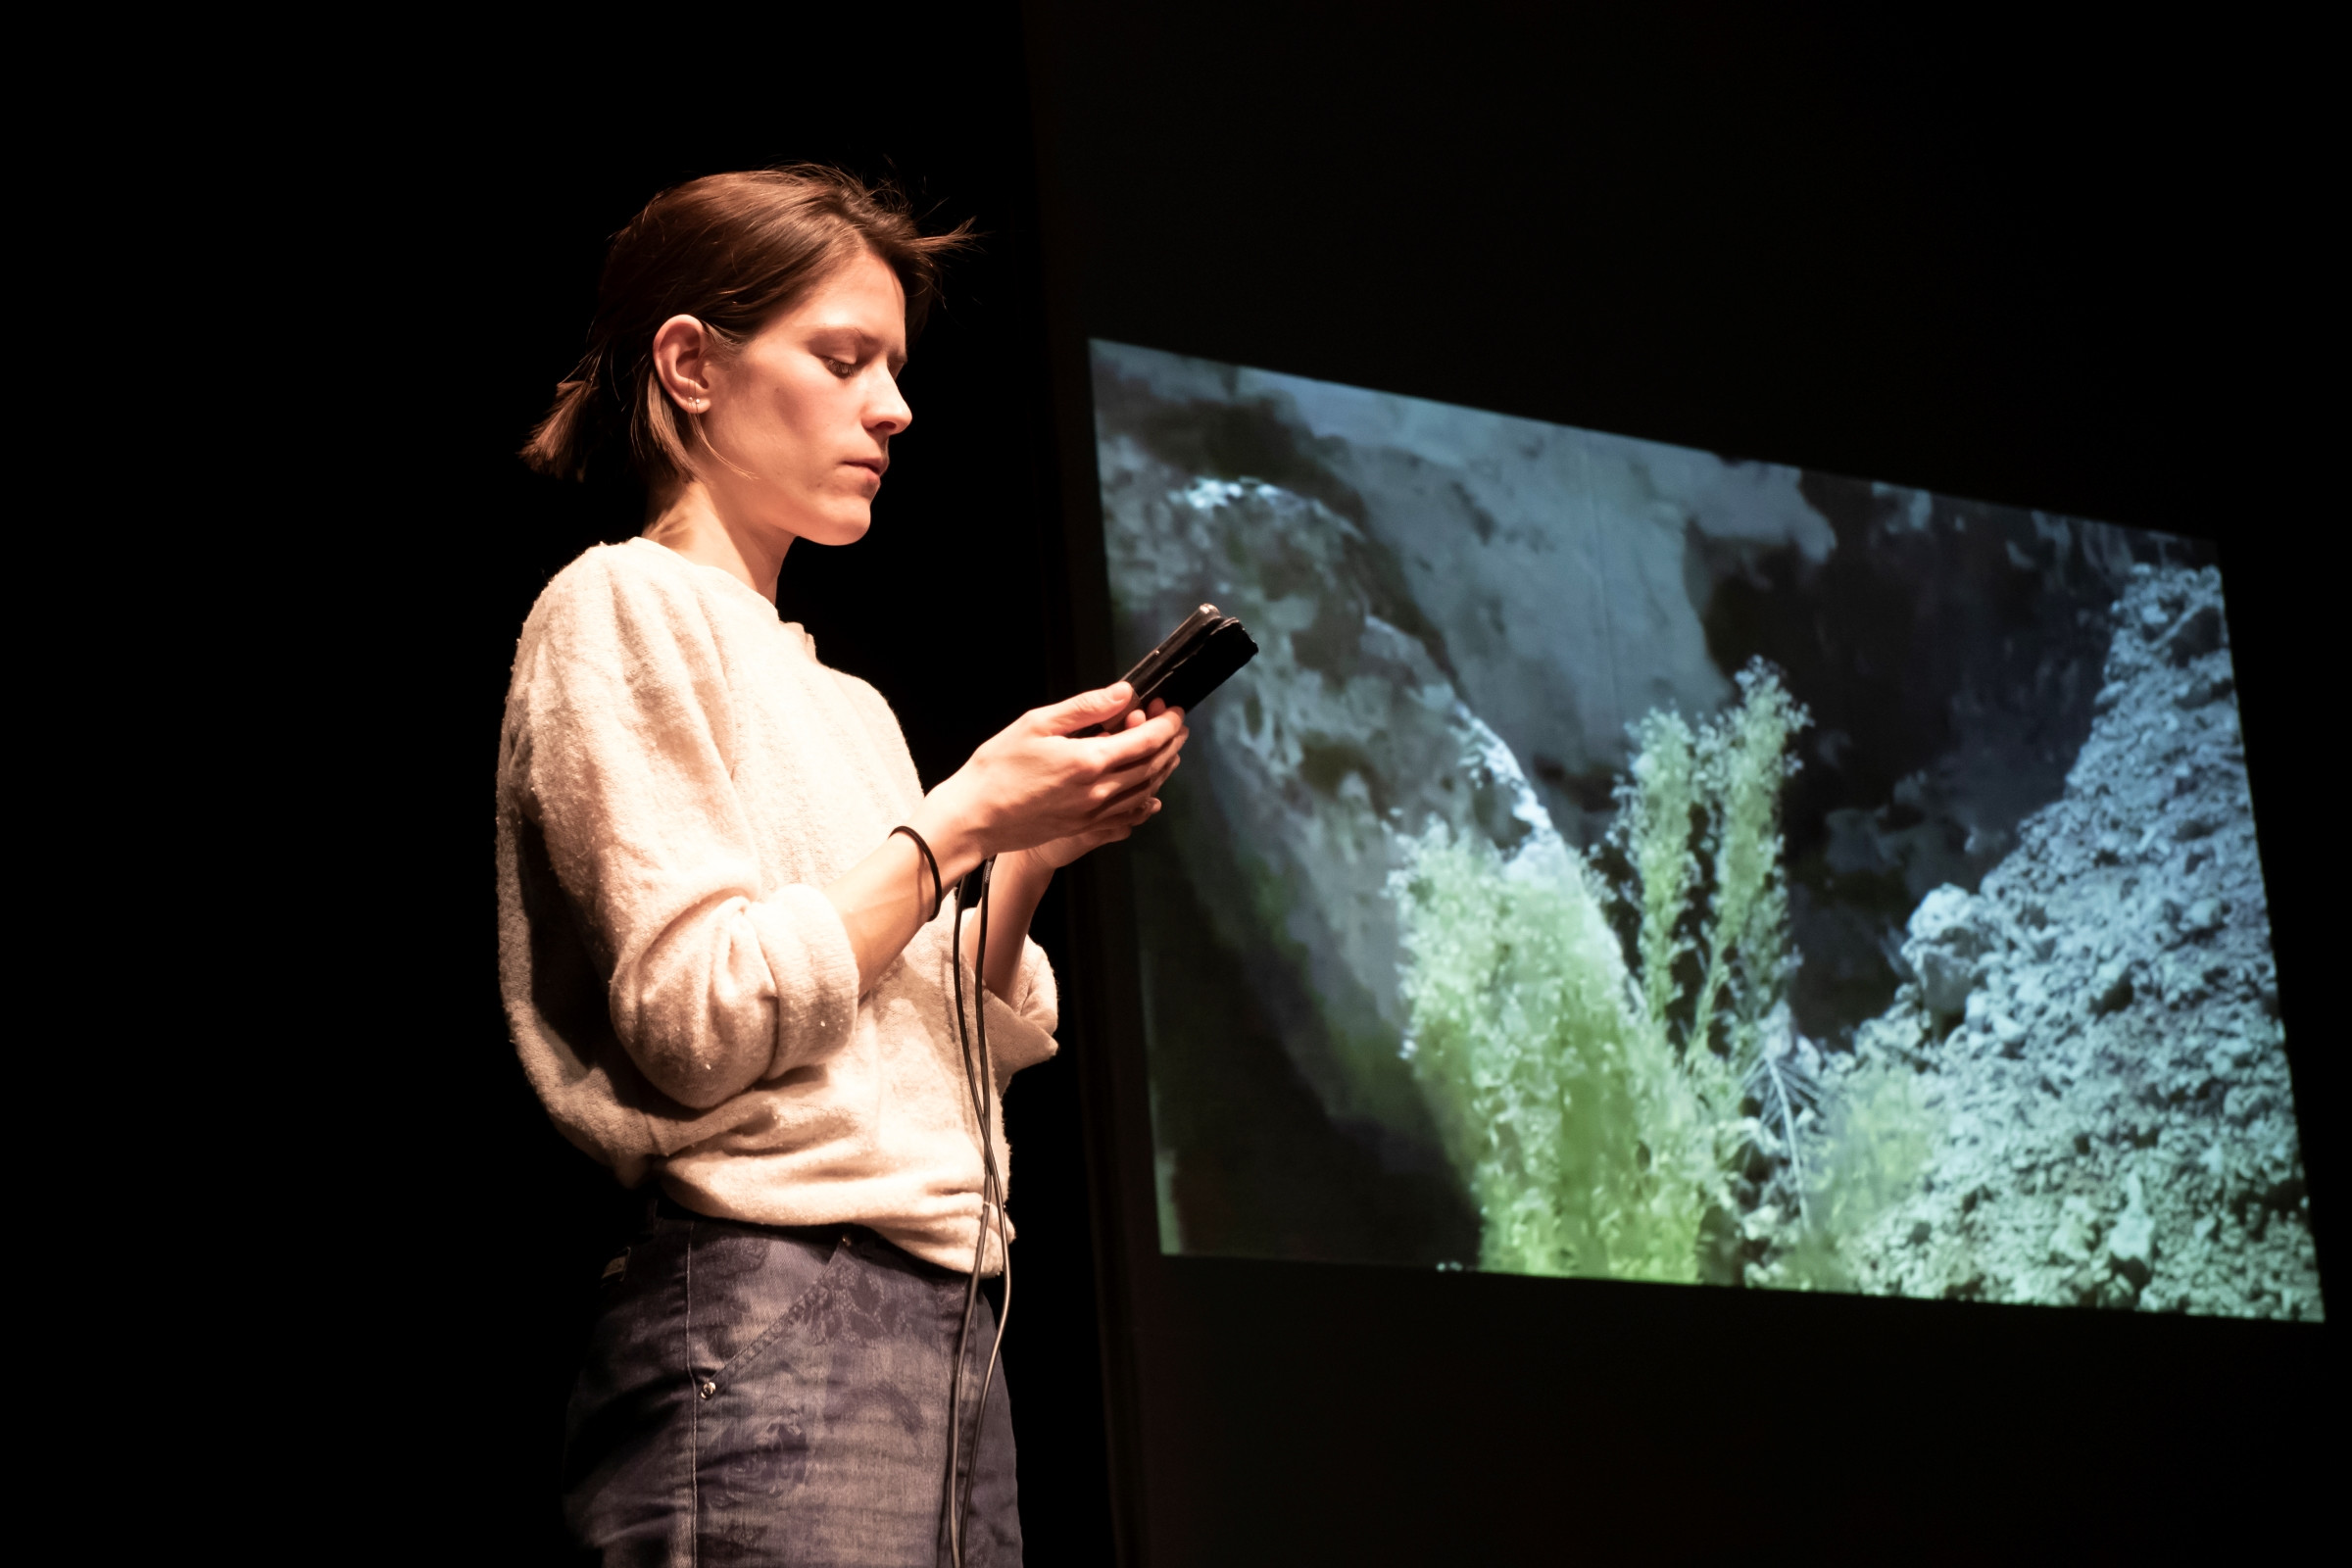 Silke Huysmans mit Blick auf das Smartphone in ihrer Hand. Im Hintergrund ein Foto auf einem Screen.